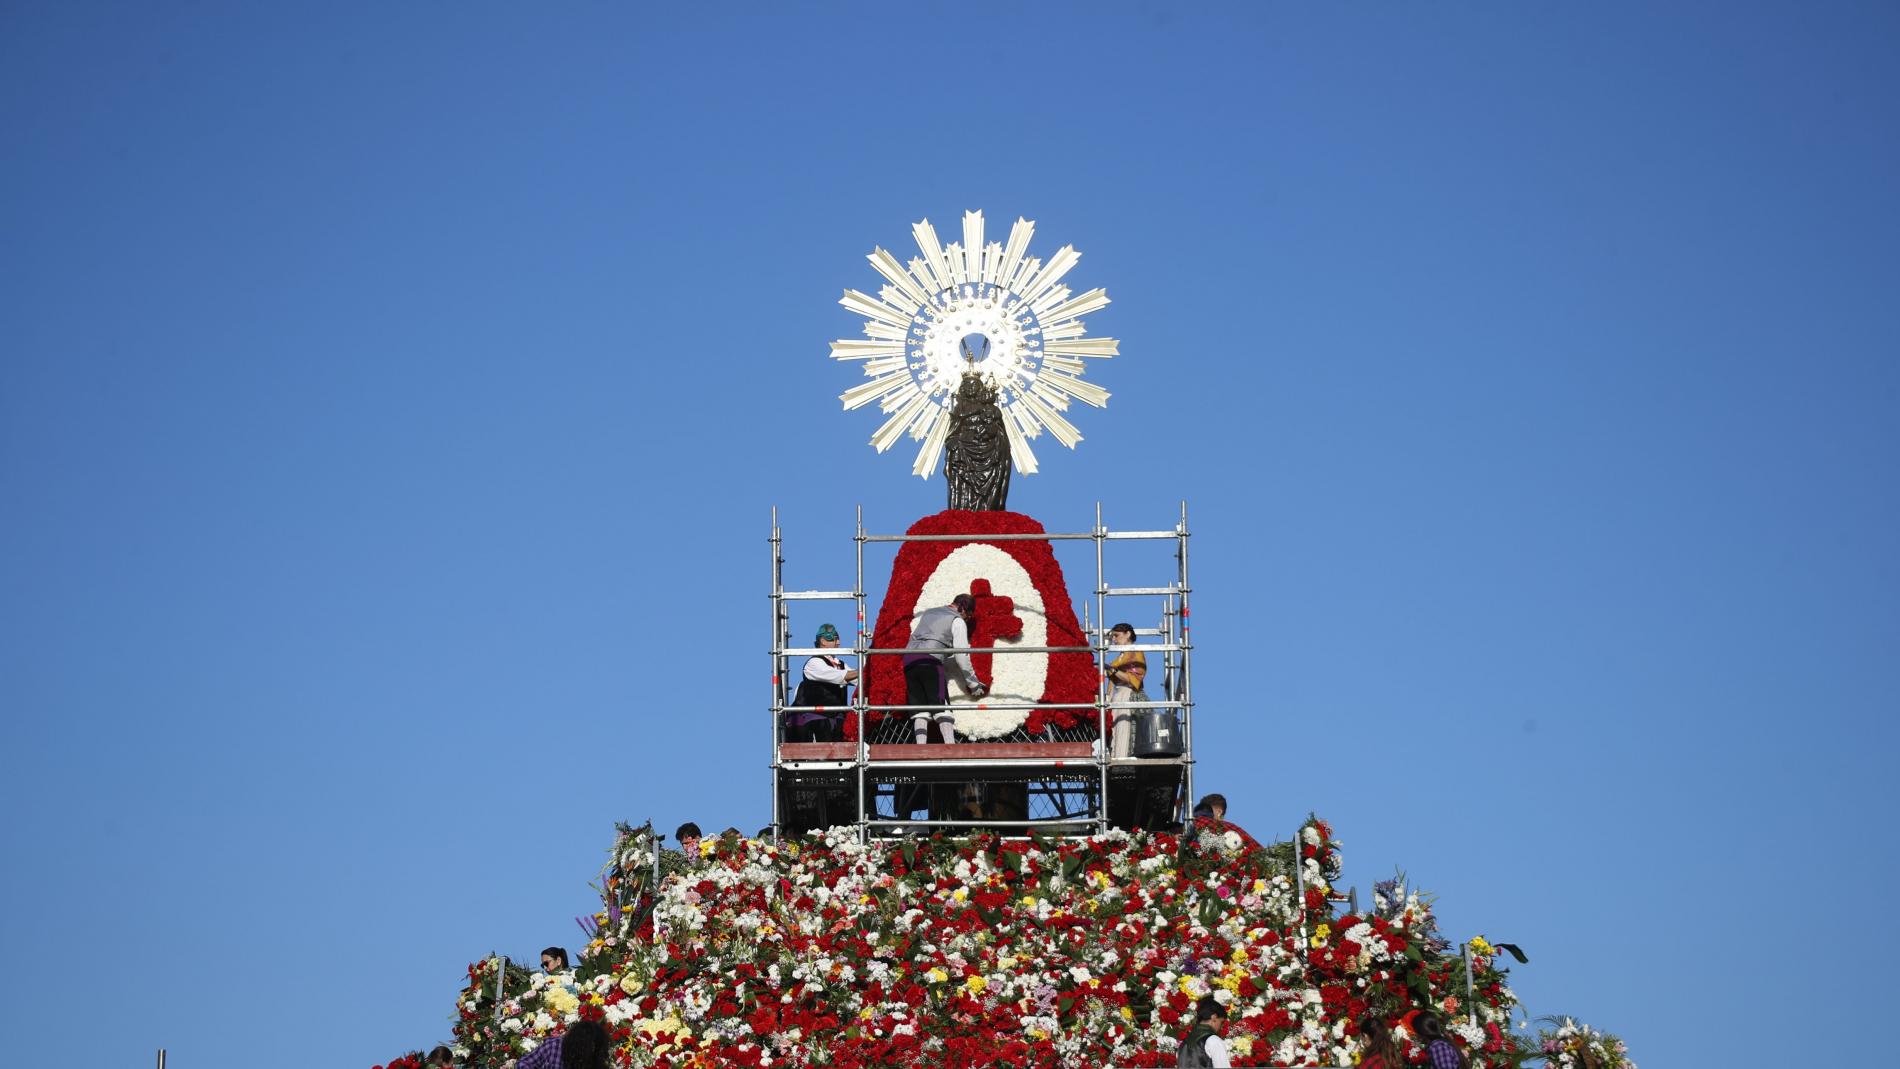 La ofrenda de flores envuelve a la Virgen del Pilar de color y cariño masivo